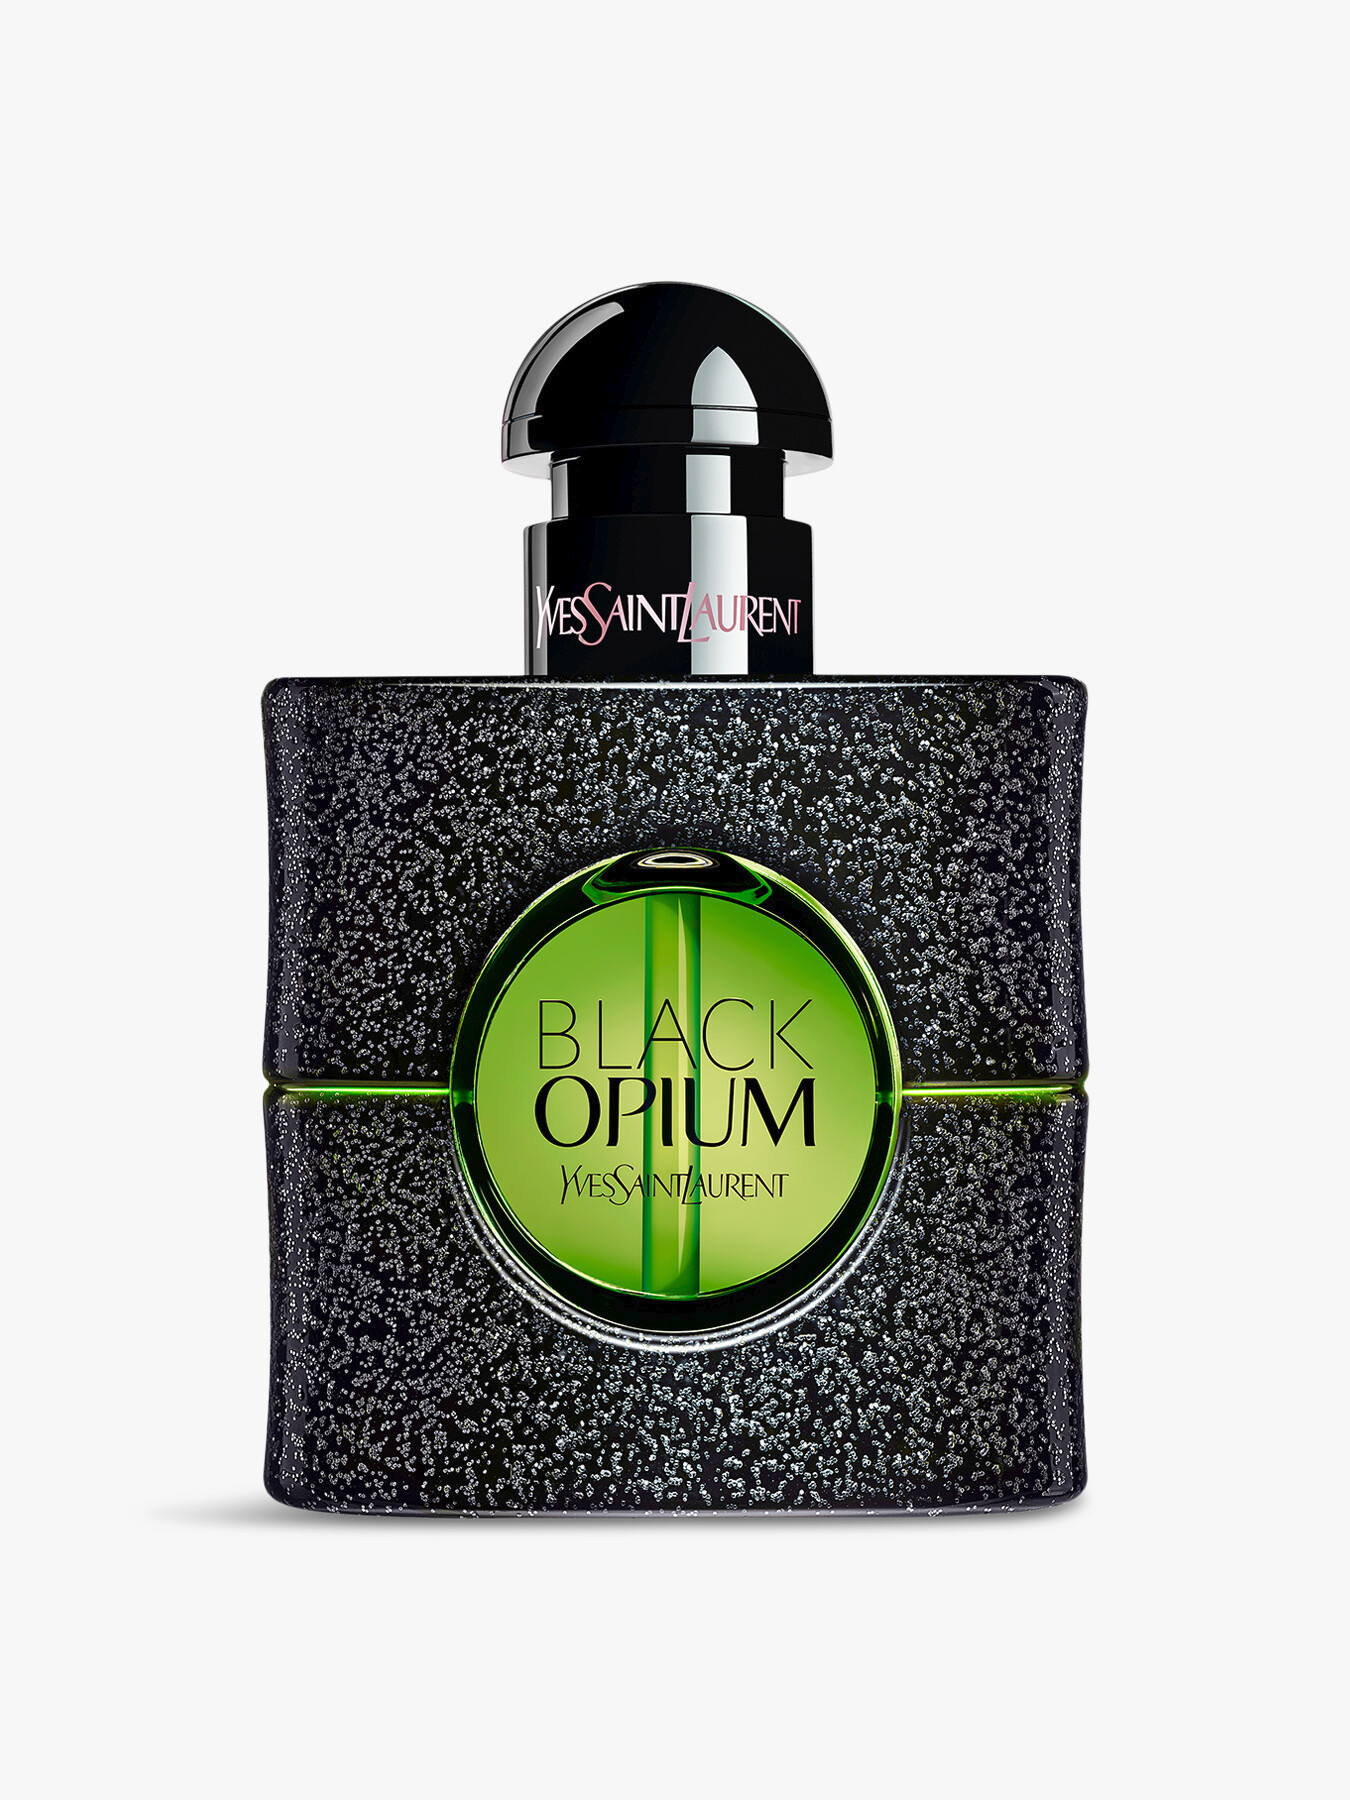 Ysl Black Opium Illicit Green Eau De Parfum 30ml